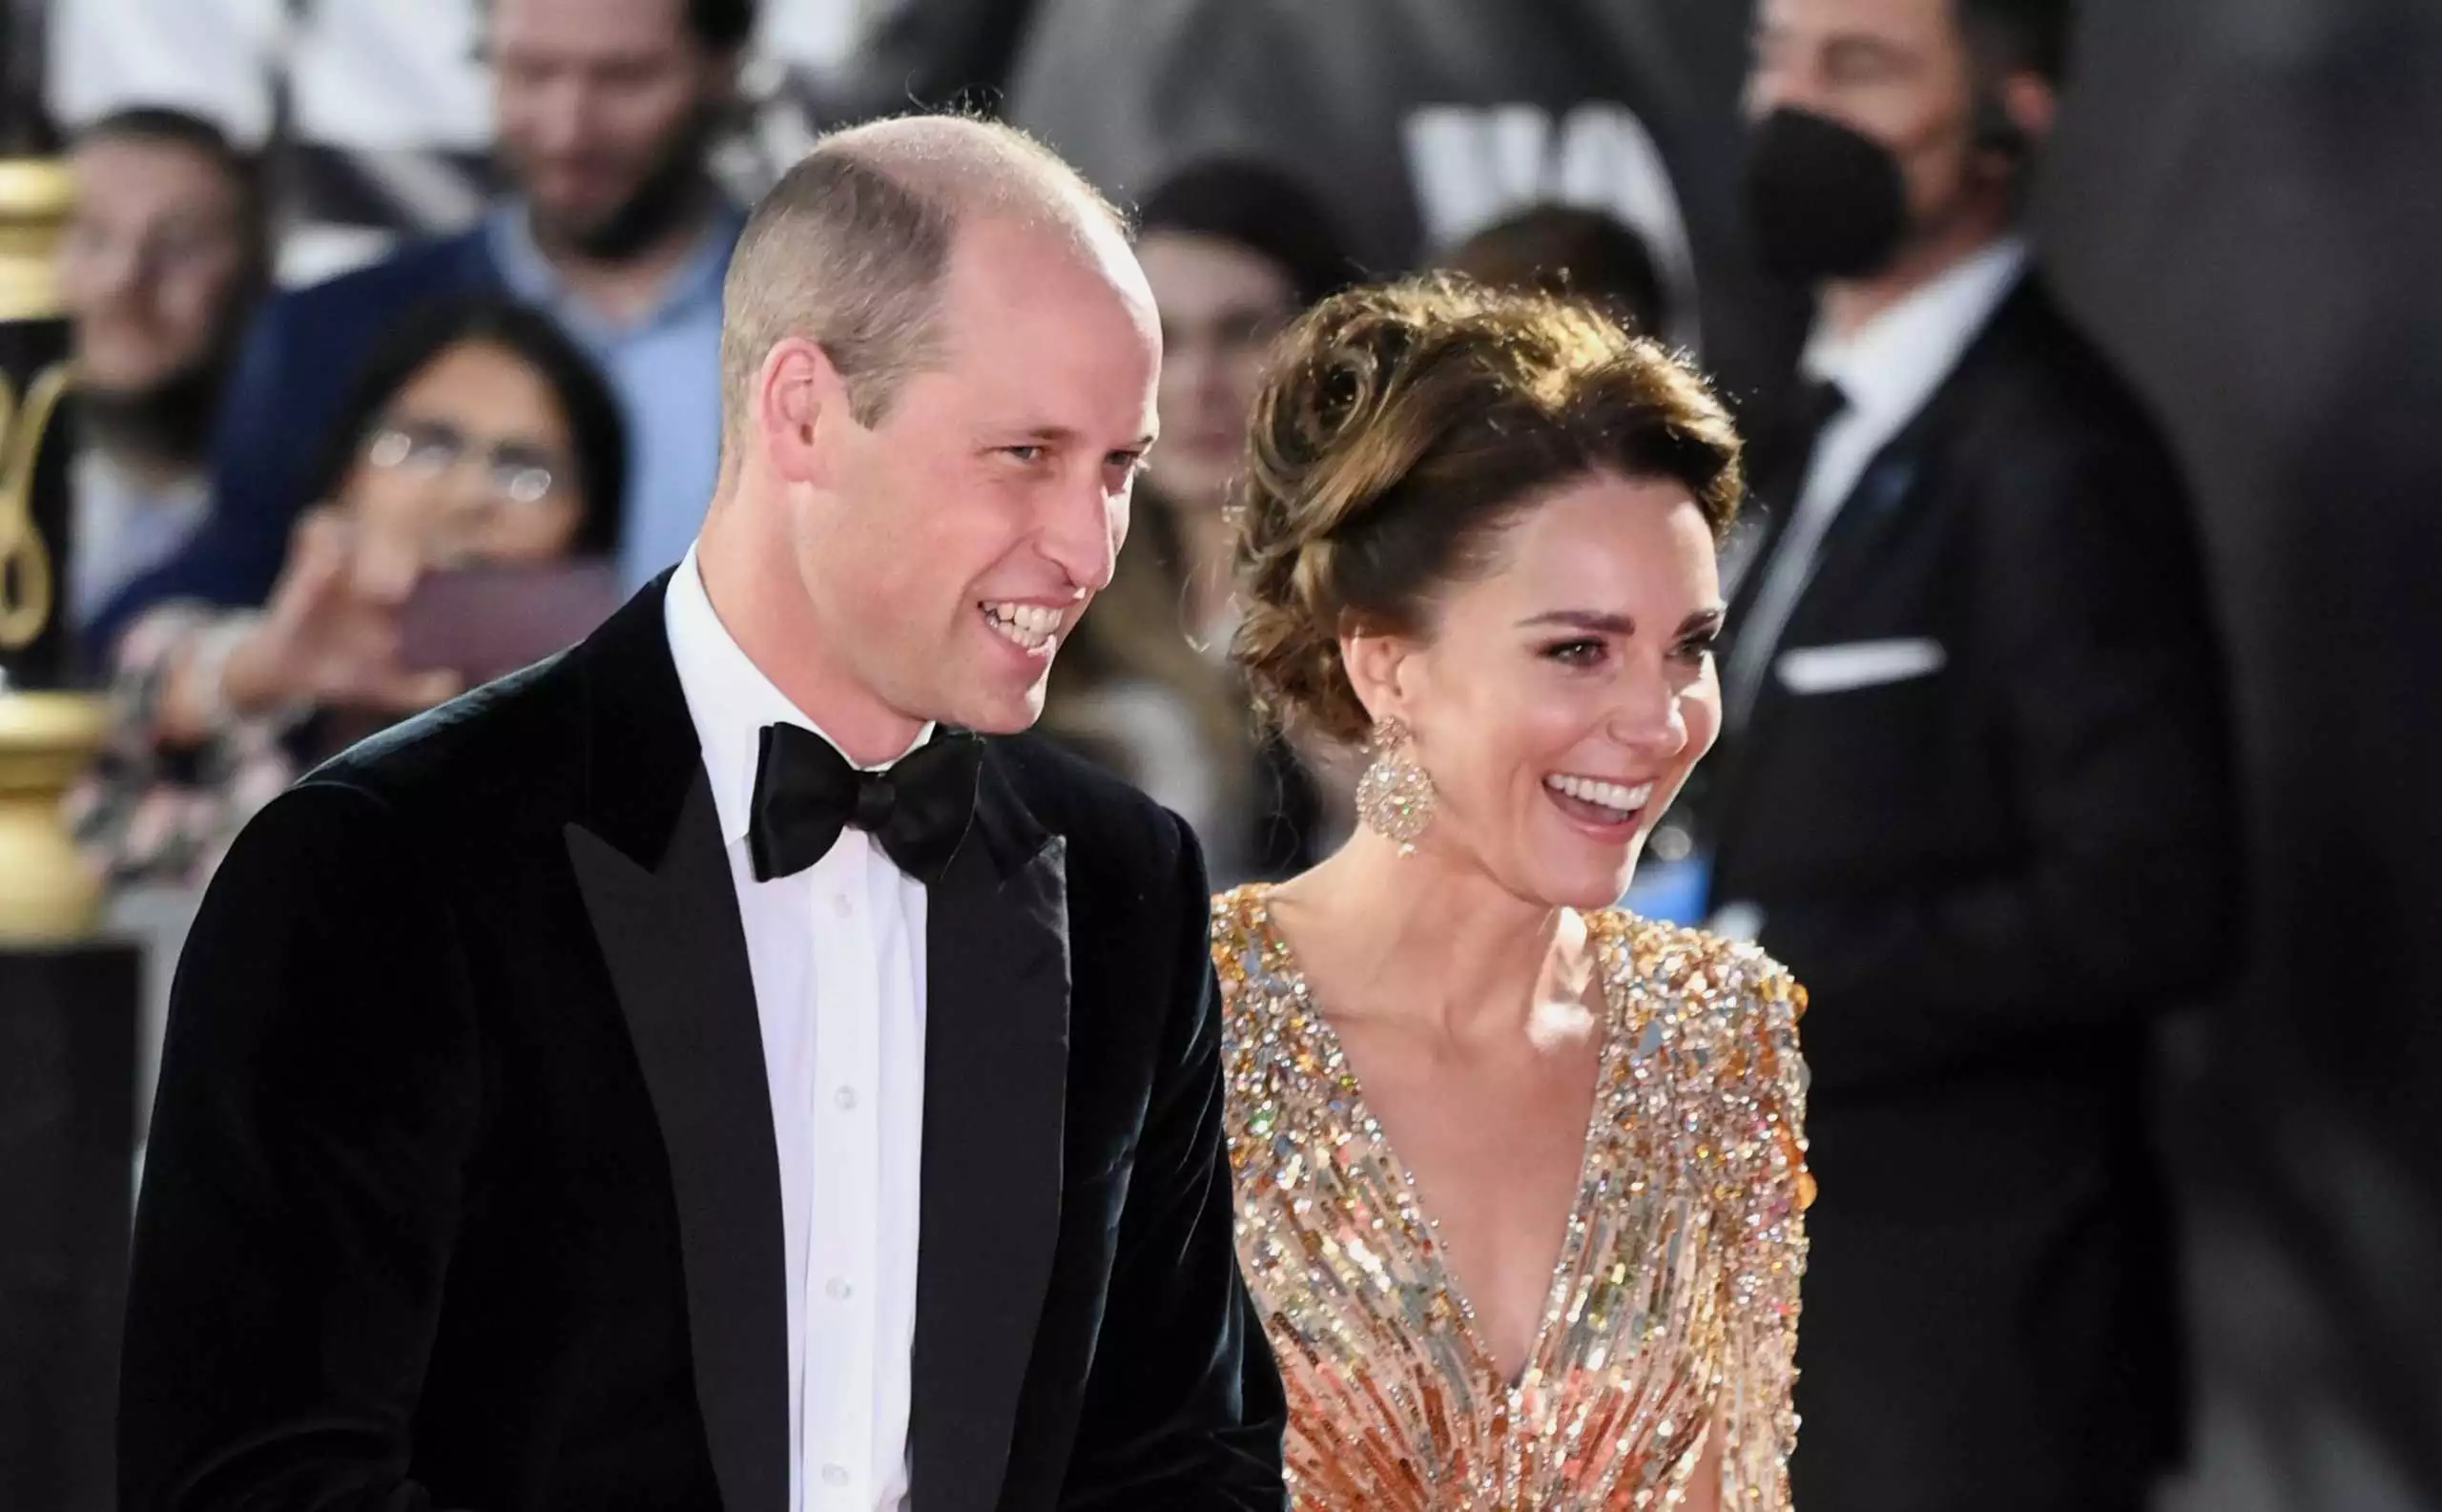 Επέτειος γάμου για Πρίγκιπα Γουίλιαμ – Κ.Μίντλετον: Για πρώτη φορά θα γιορτάσουν ιδιωτικά